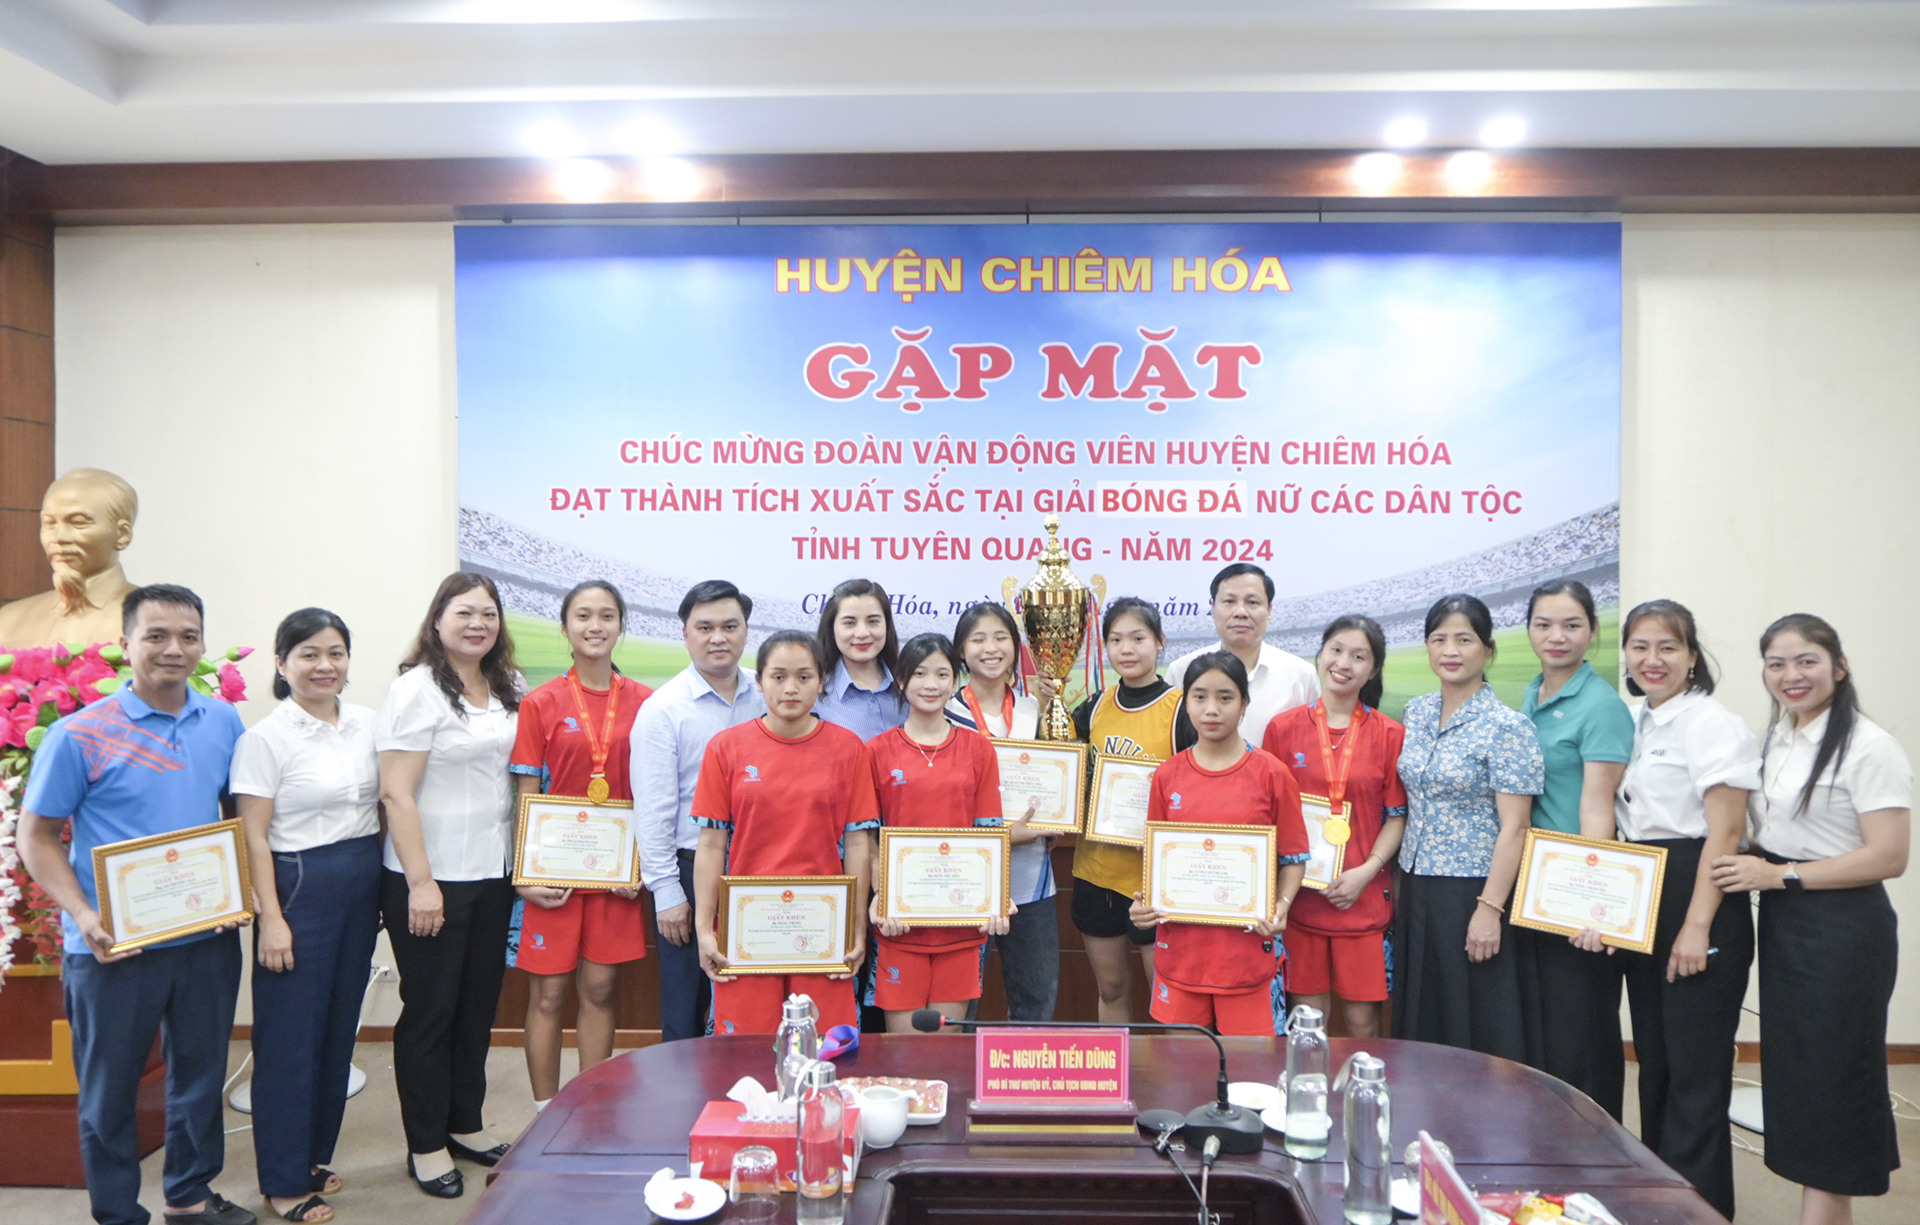 Huyện Chiêm Hóa gặp mặt biểu dương, khen thưởng đoàn vận động viên đạt thành tích xuất sắc tại Giải Bóng đá nữ các dân tộc tỉnh Tuyên Quang năm 2024